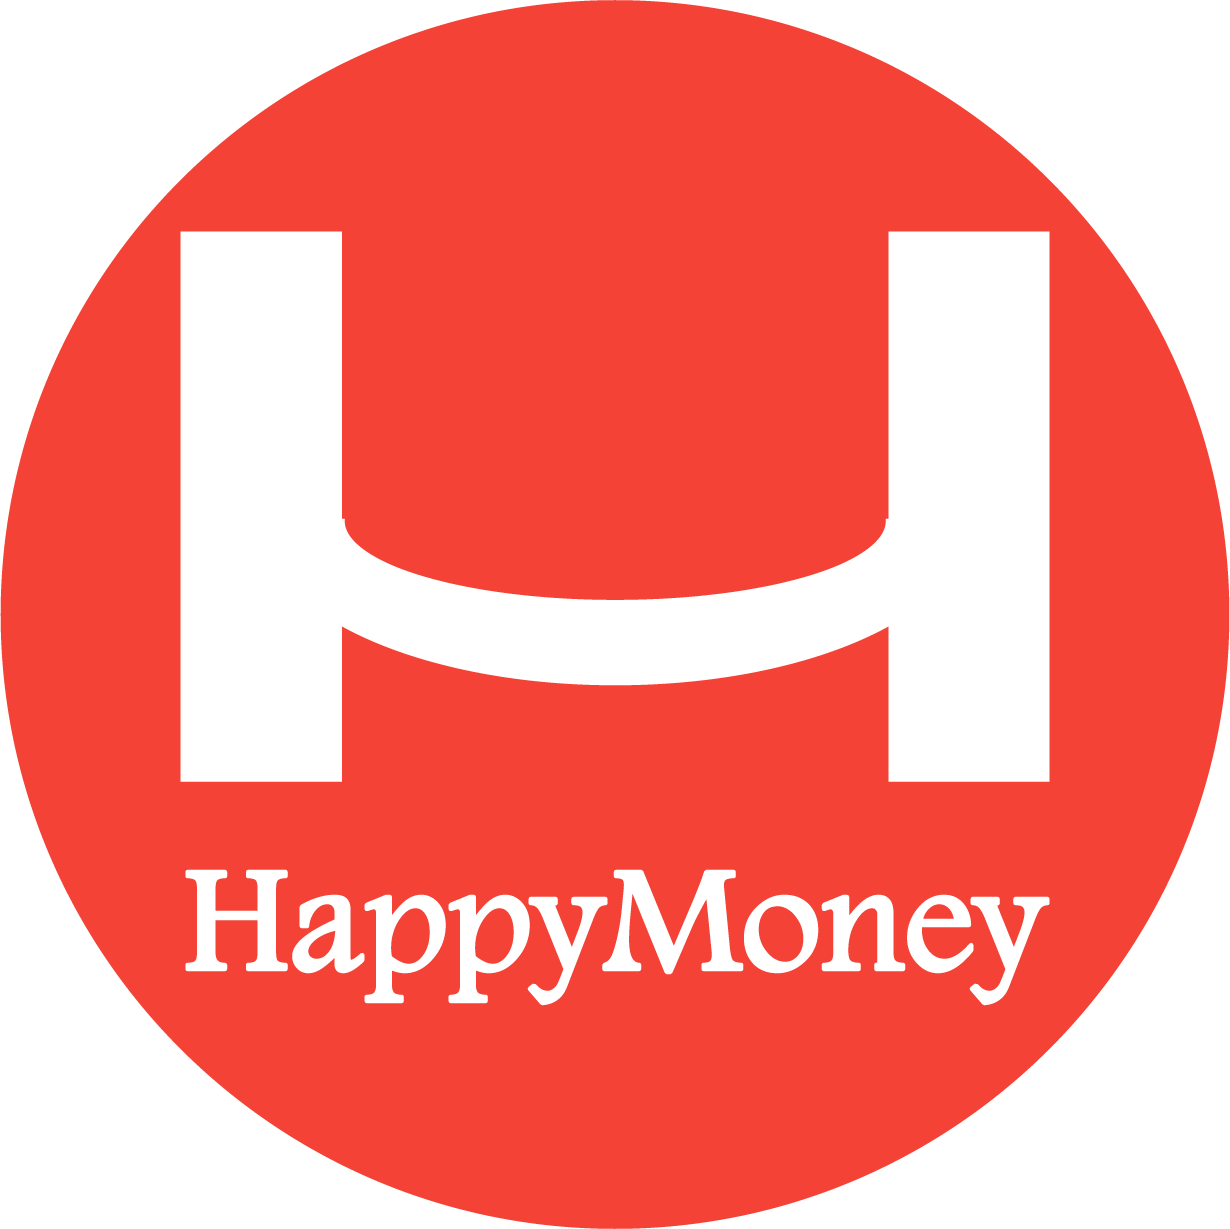 Happy Money là gì?